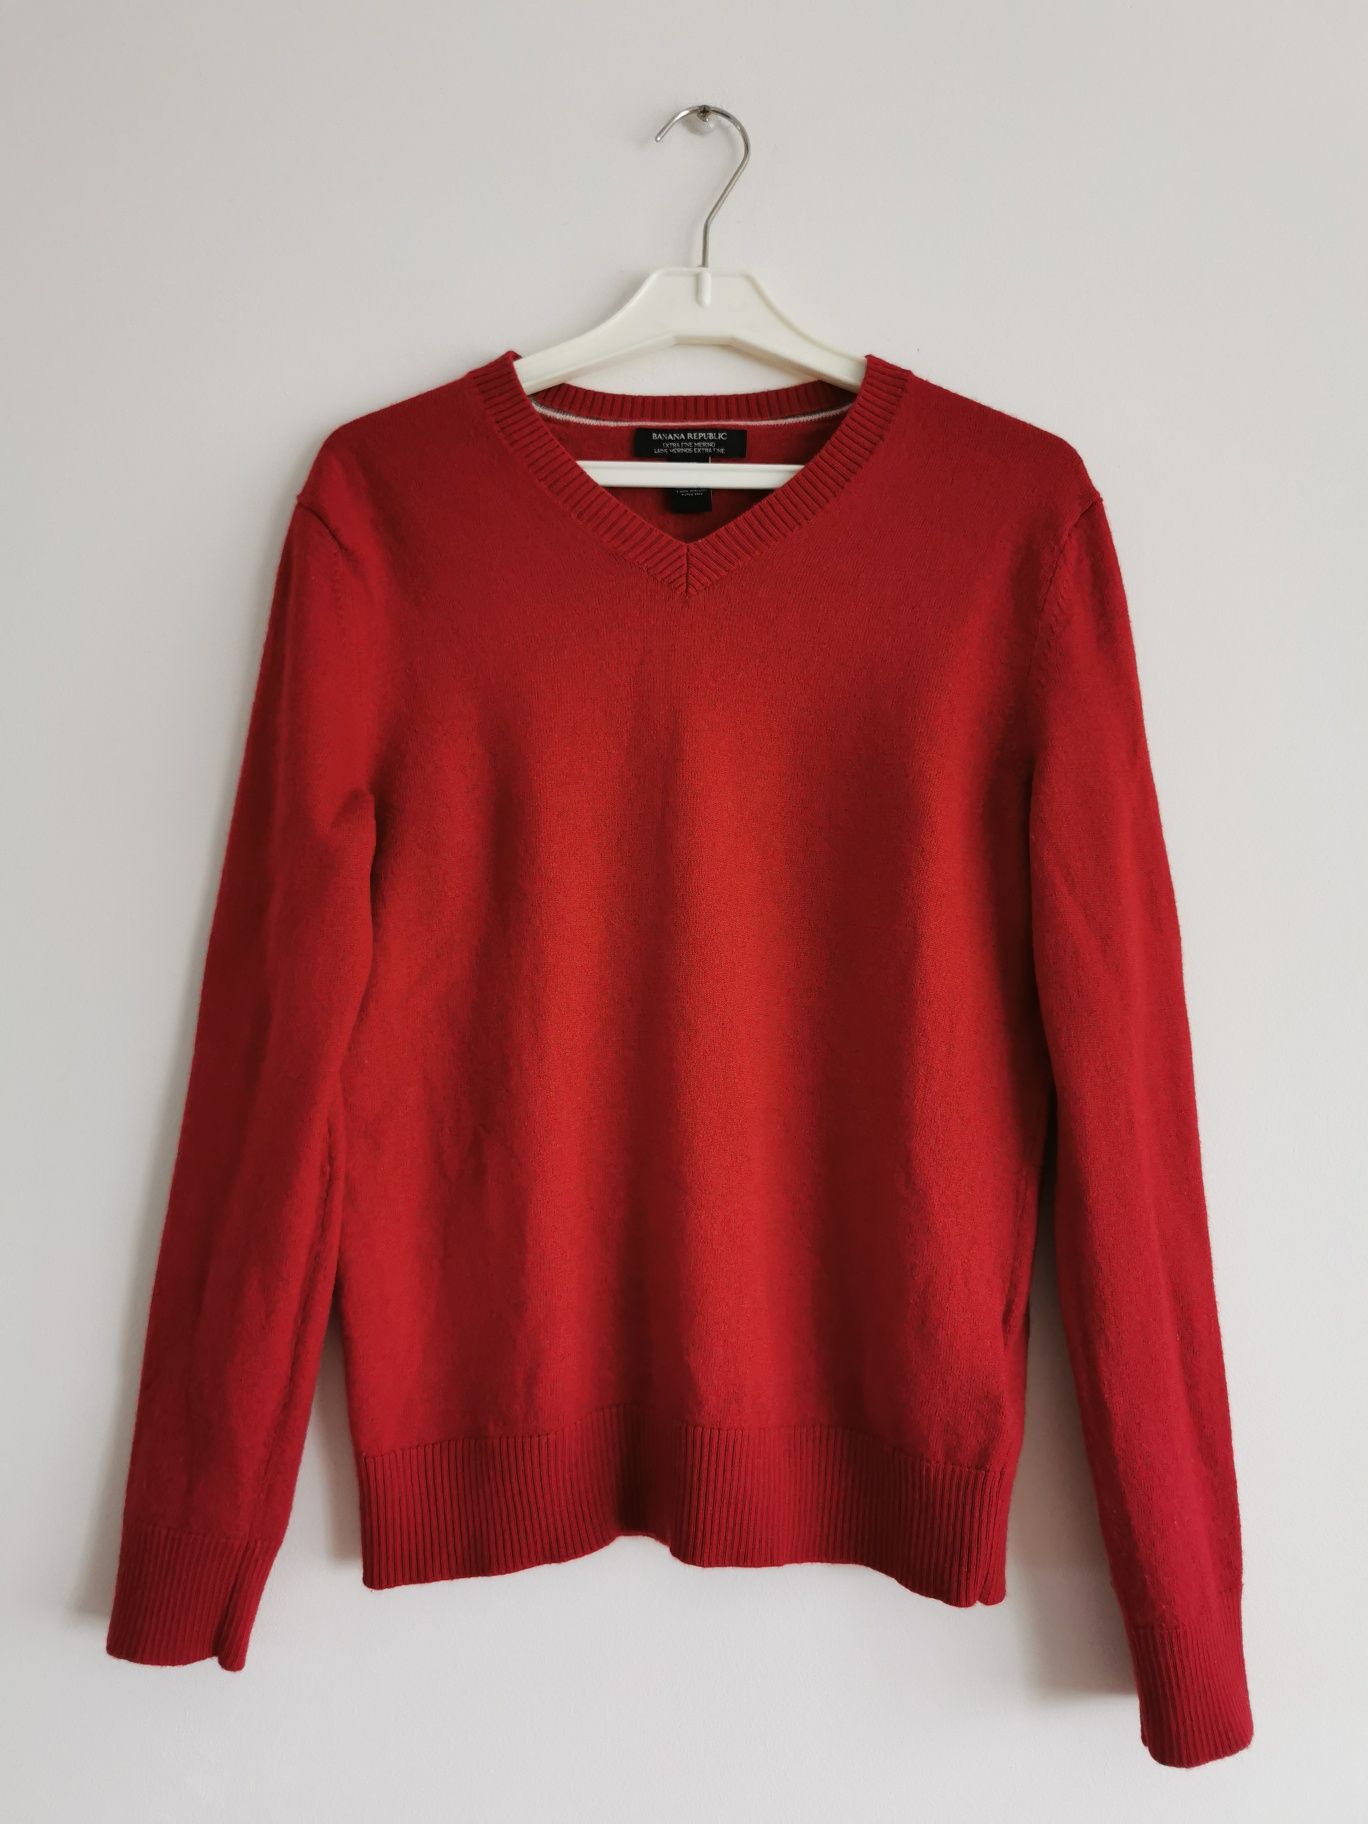 Banana Republic wełniany sweter czerwony 100% wełna merino S